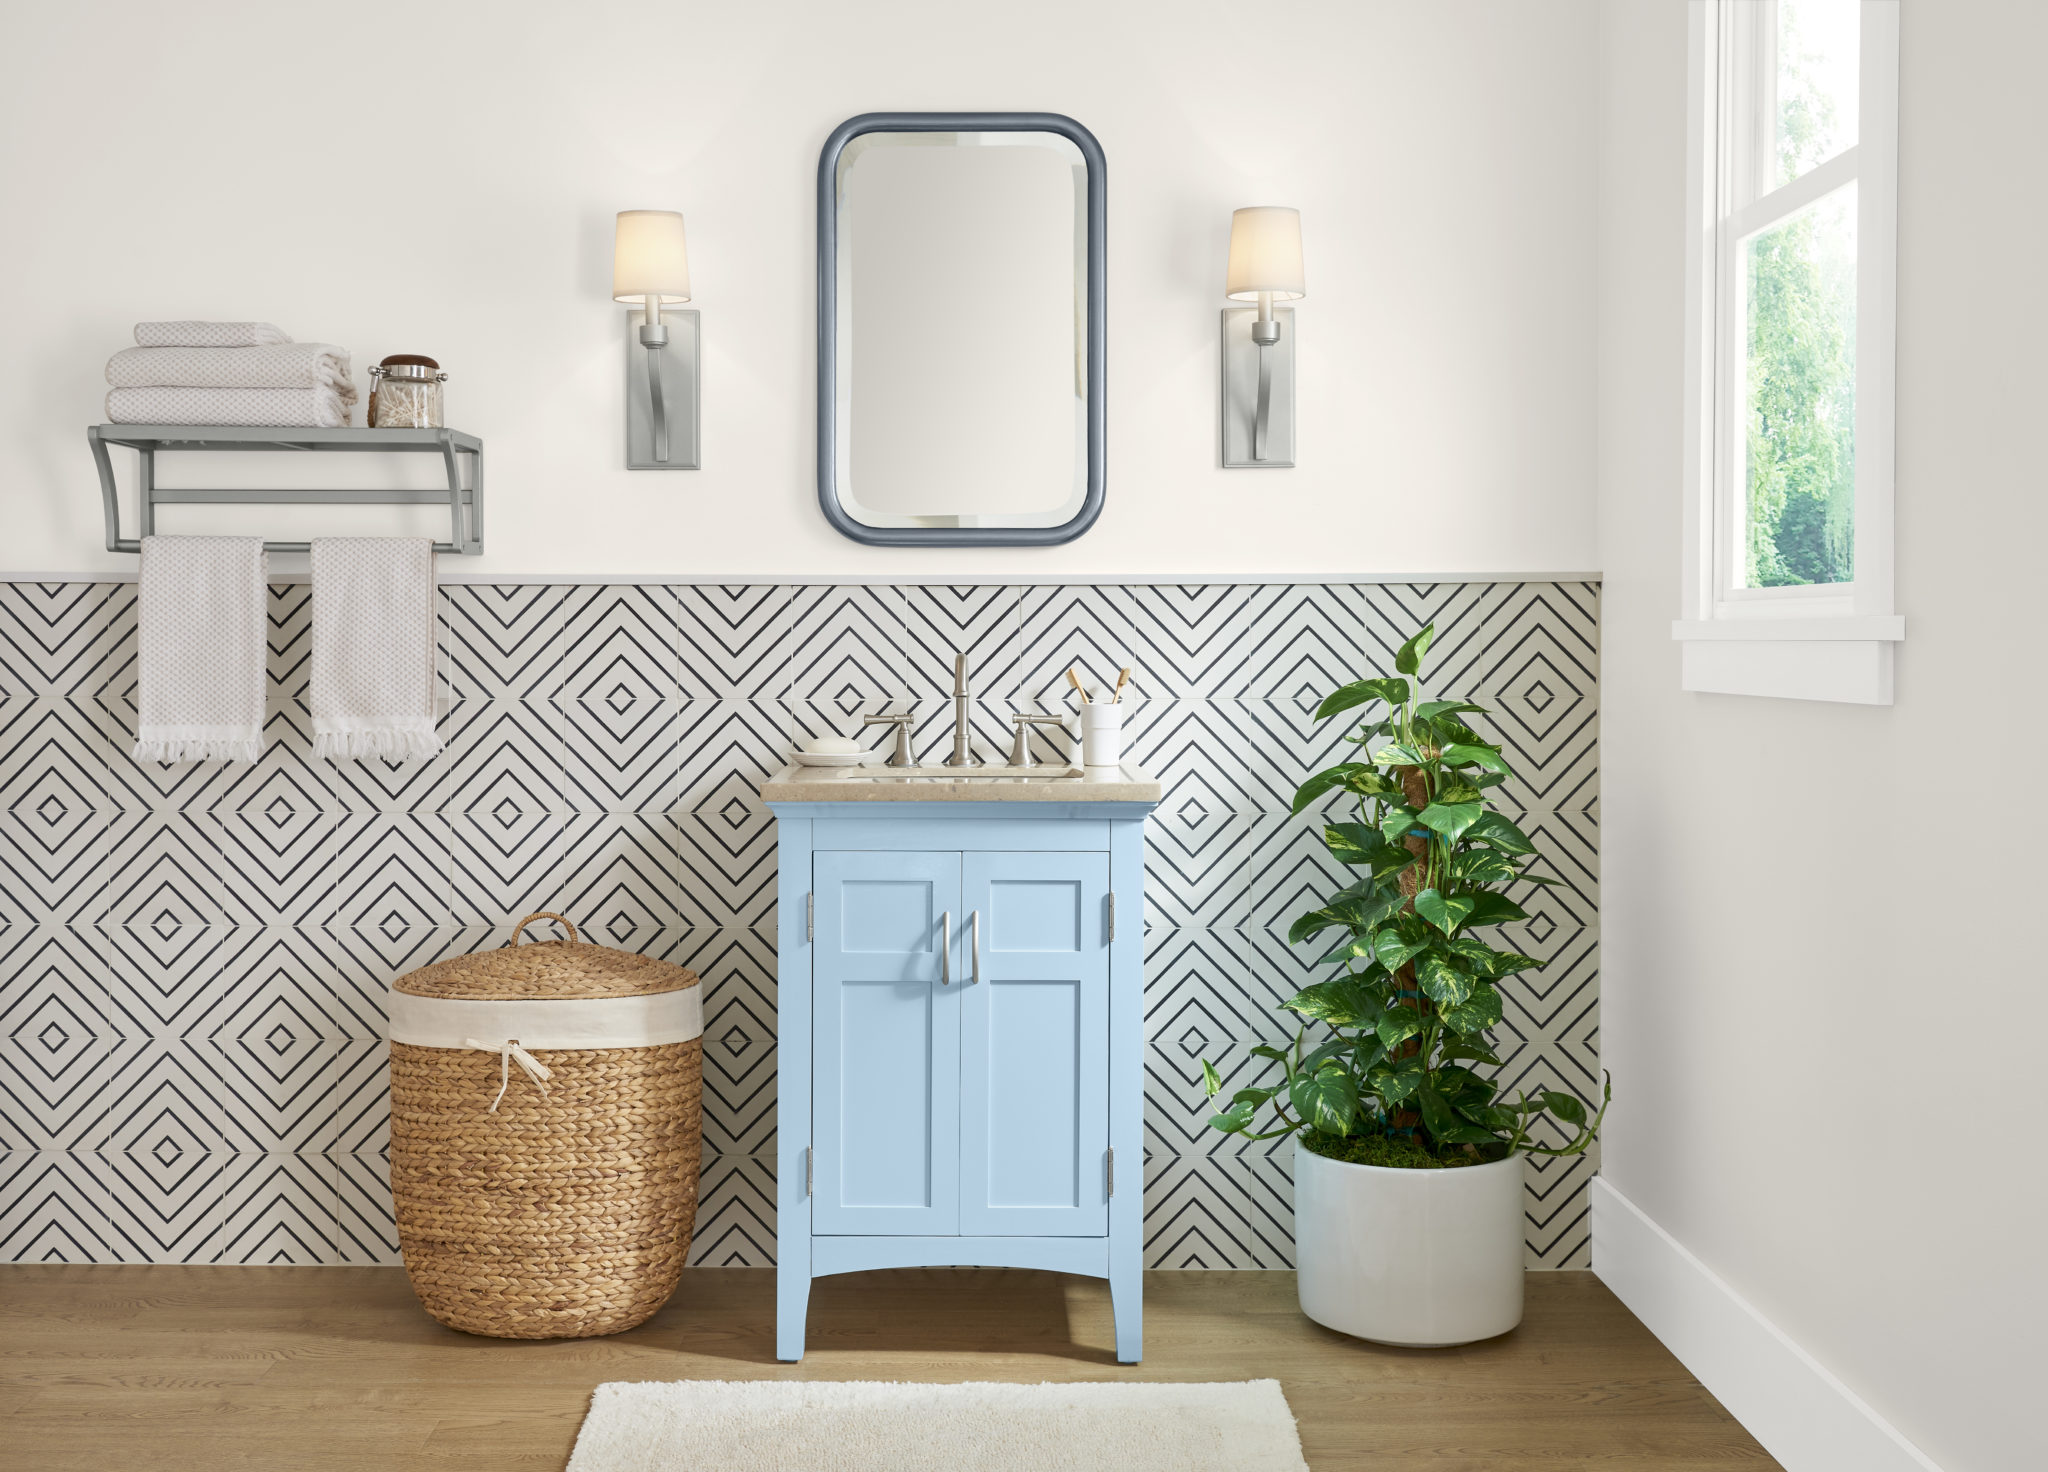 Une salle de bain avec un petit meuble-lavabo peinturé en bleu clair. Le mur d'accent inférieur est carrelé avec un motif géométrique noir et blanc.